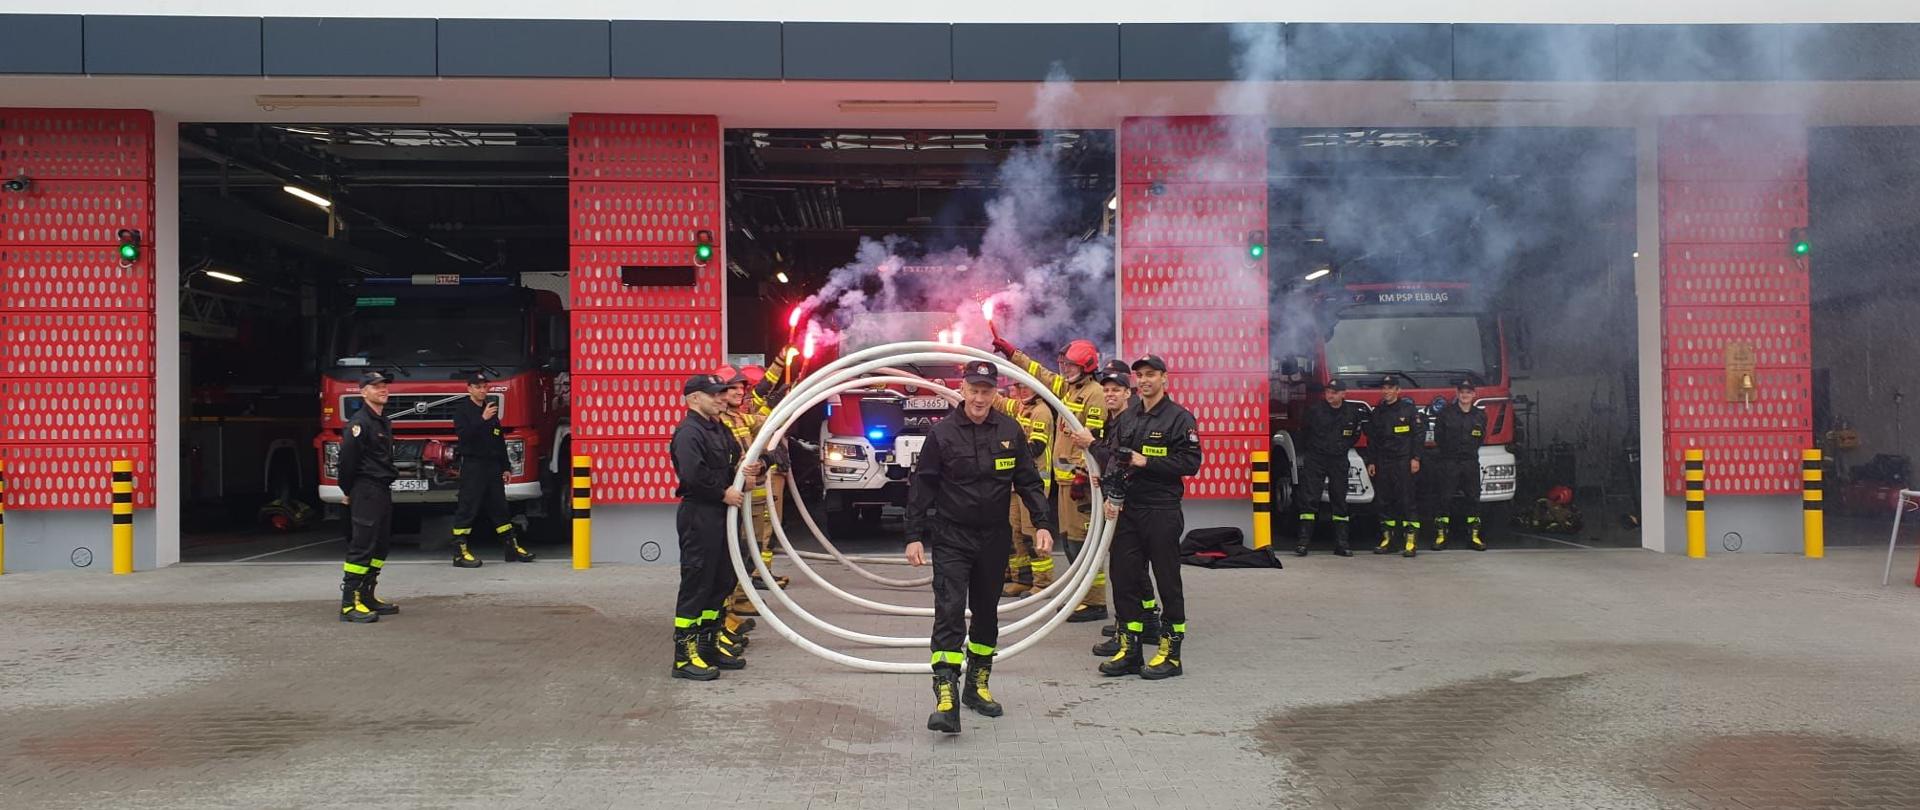 Strażacy stoją na przeciwko siebie i trzymają w rękach zwinięty w spiralę waż. W środku stoi wyróżniony strażak. W tle budynek remizy strażackiej z widocznymi pojazdami pożarniczymi.